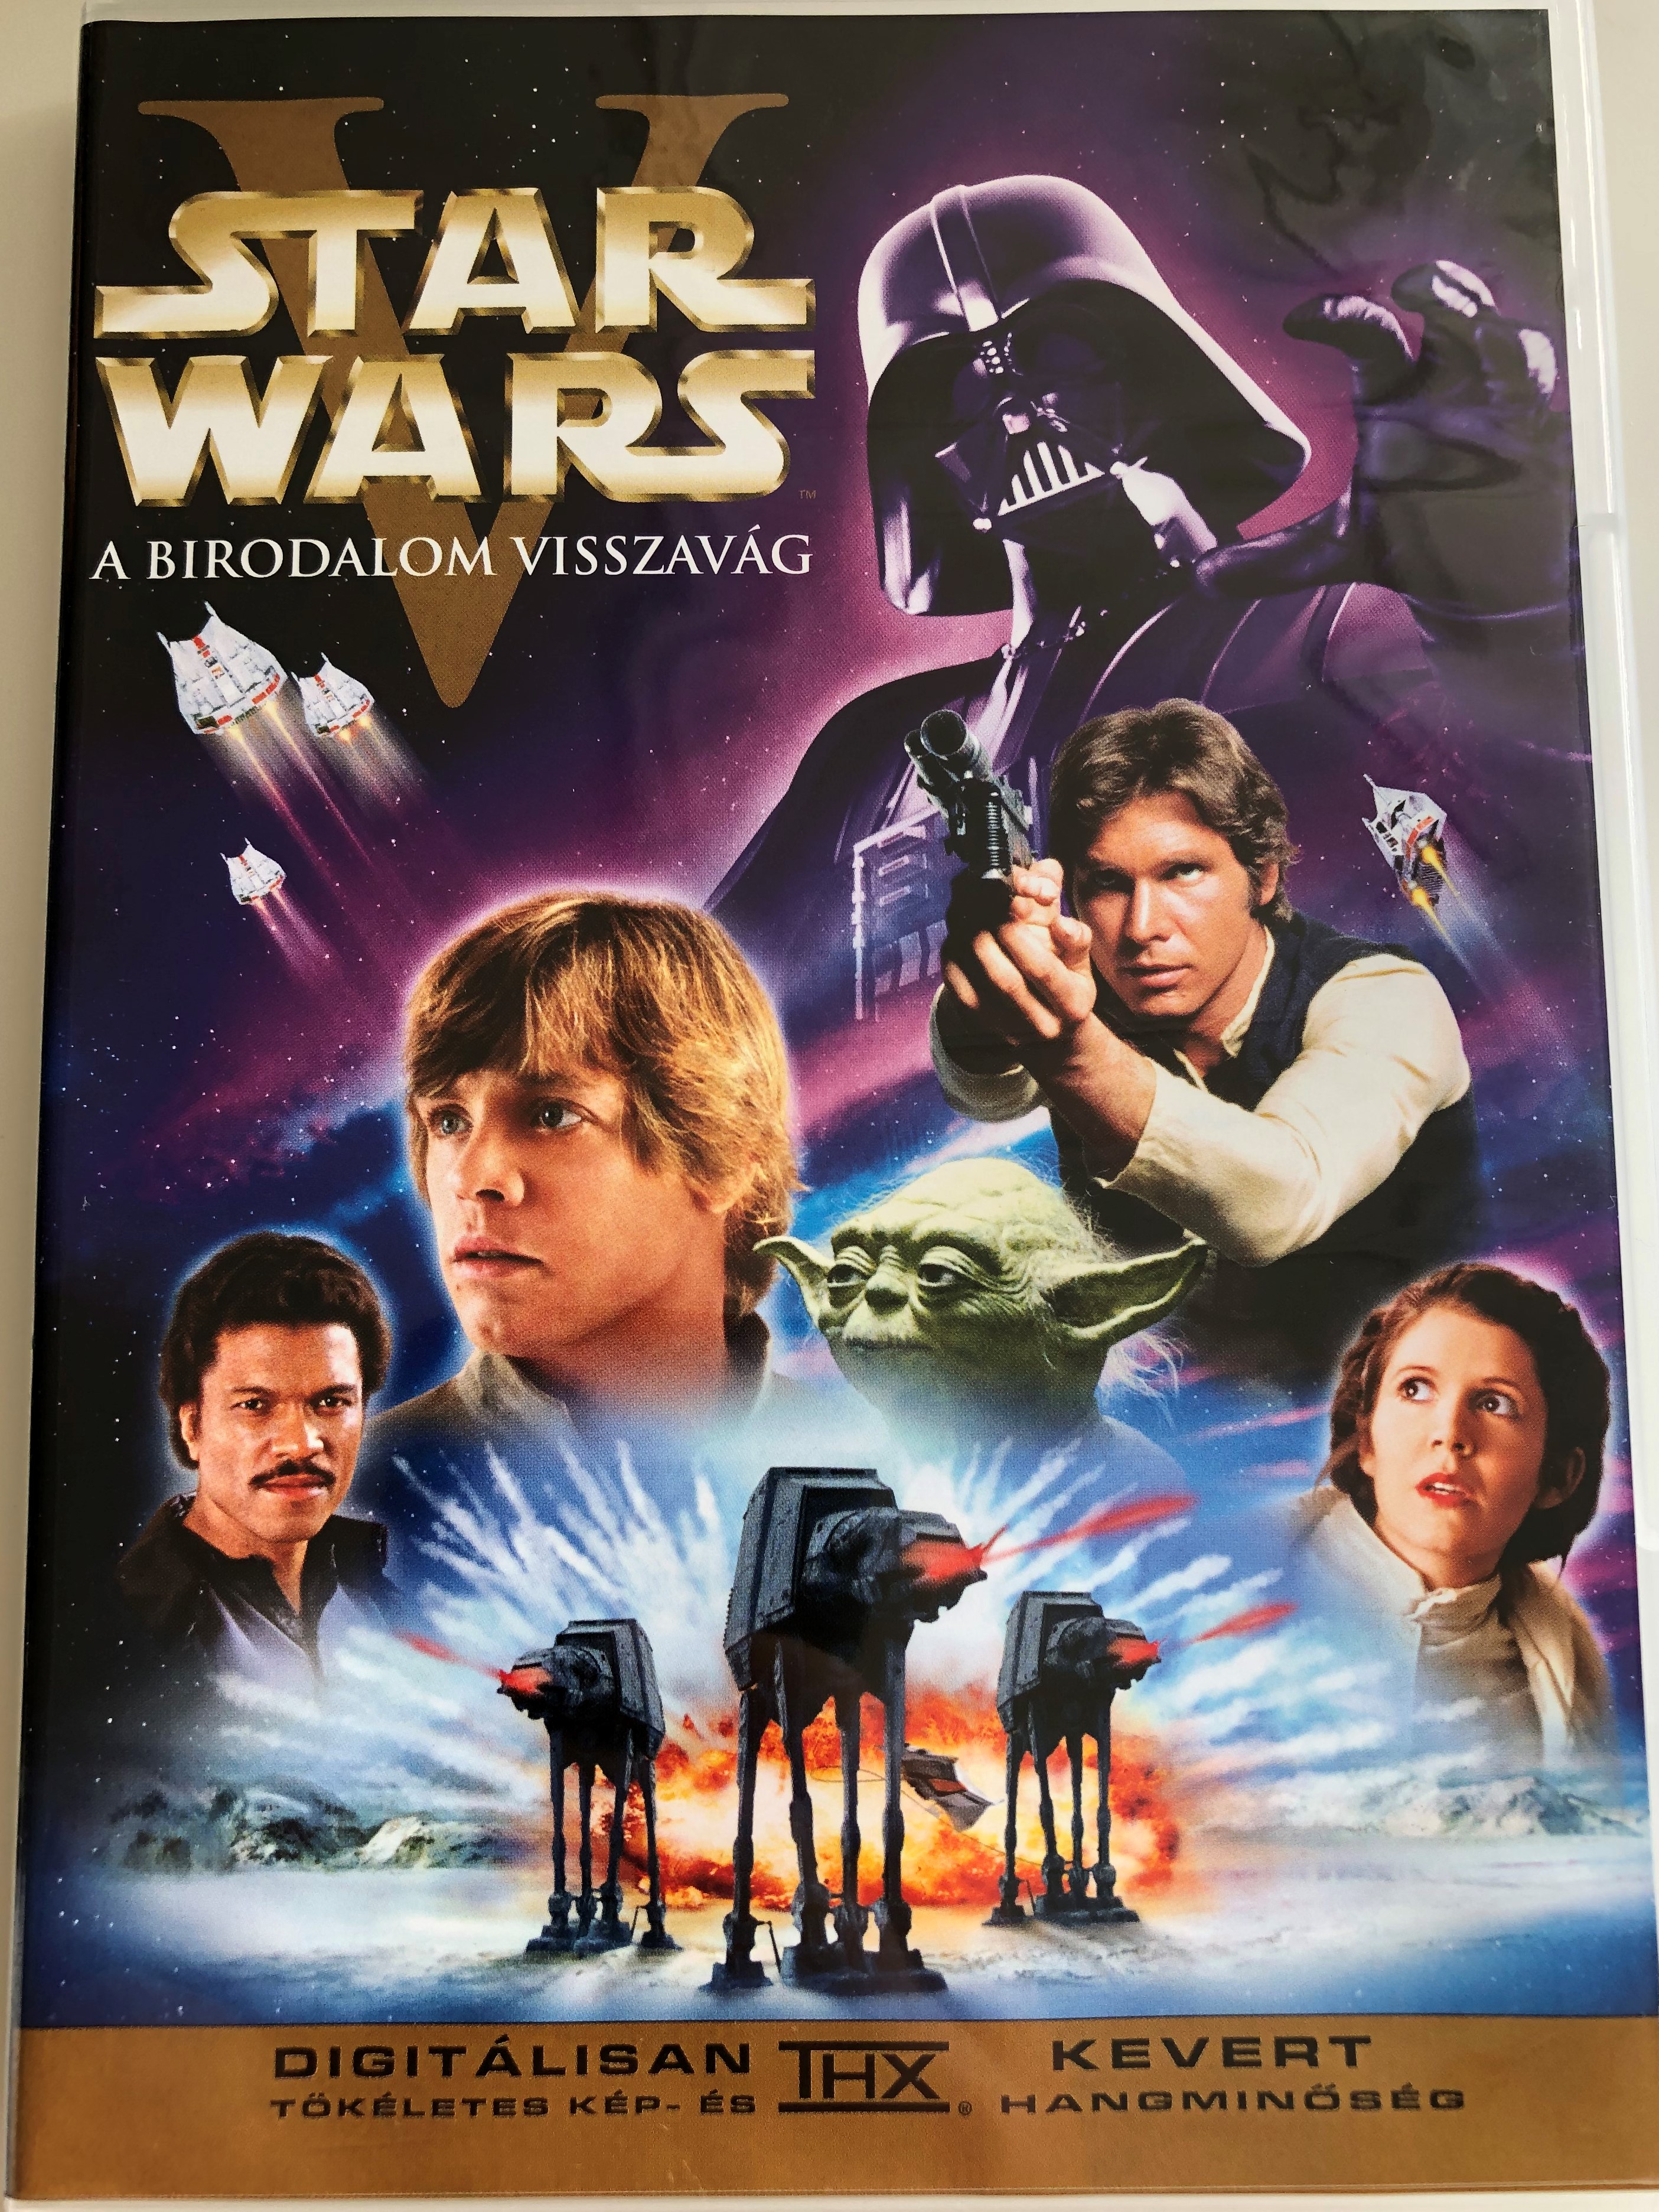 star-wars-episode-v-the-empire-strikes-back-dvd-1980-star-wars-v-a-birodalom-visszav-g-directed-by-irvin-kershner-starring-mark-hamill-harrison-ford-carrie-fisher-billy-dee-williams-anthony-daniels-david-prowse-kenn-1-.jpg